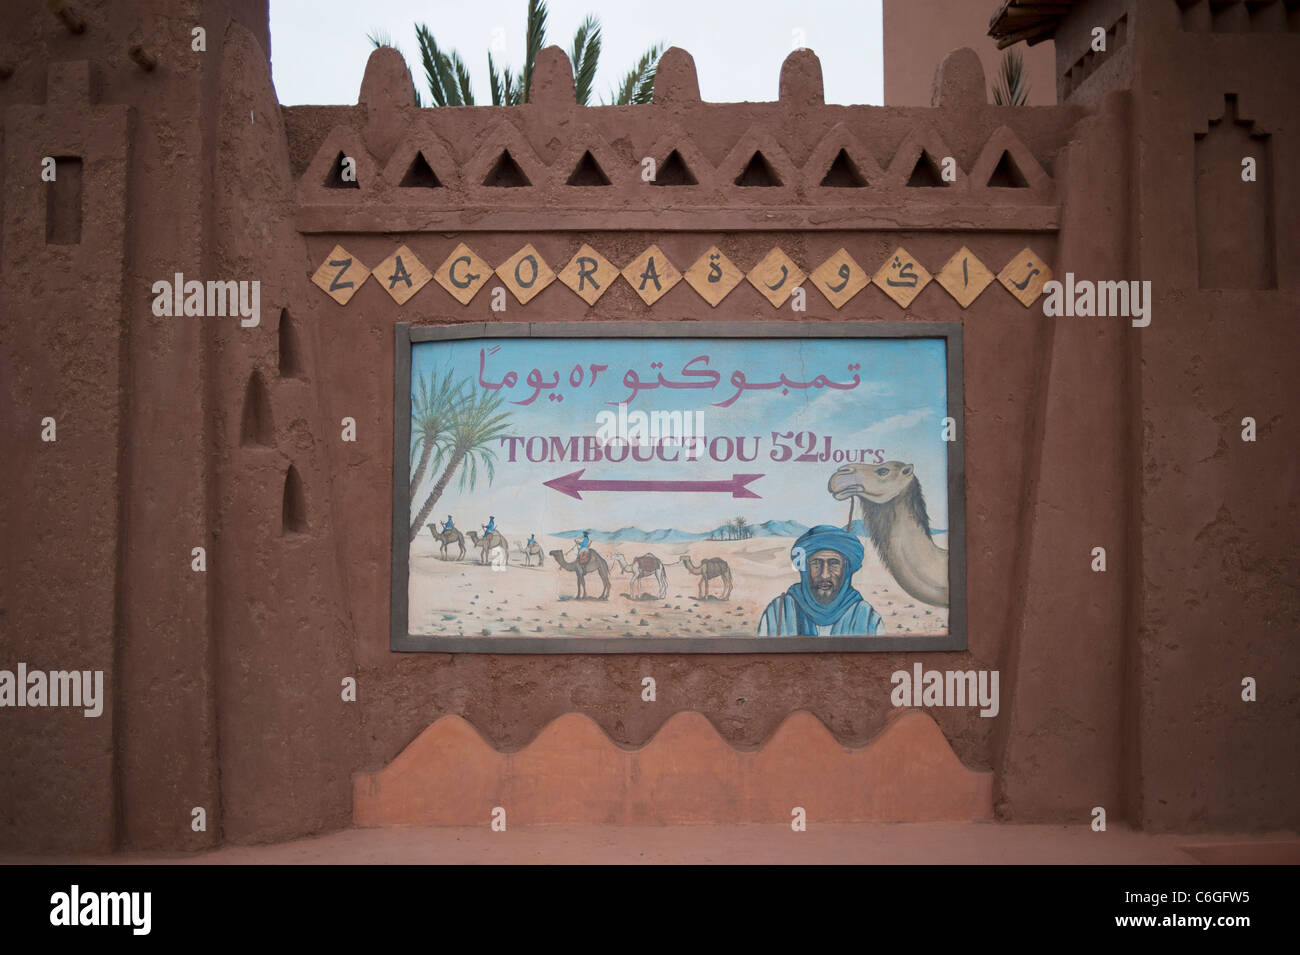 Cartello stradale per Tombouctou '52 giorni da camel' sul bordo del villaggio di Zagora, sud del Marocco Foto Stock